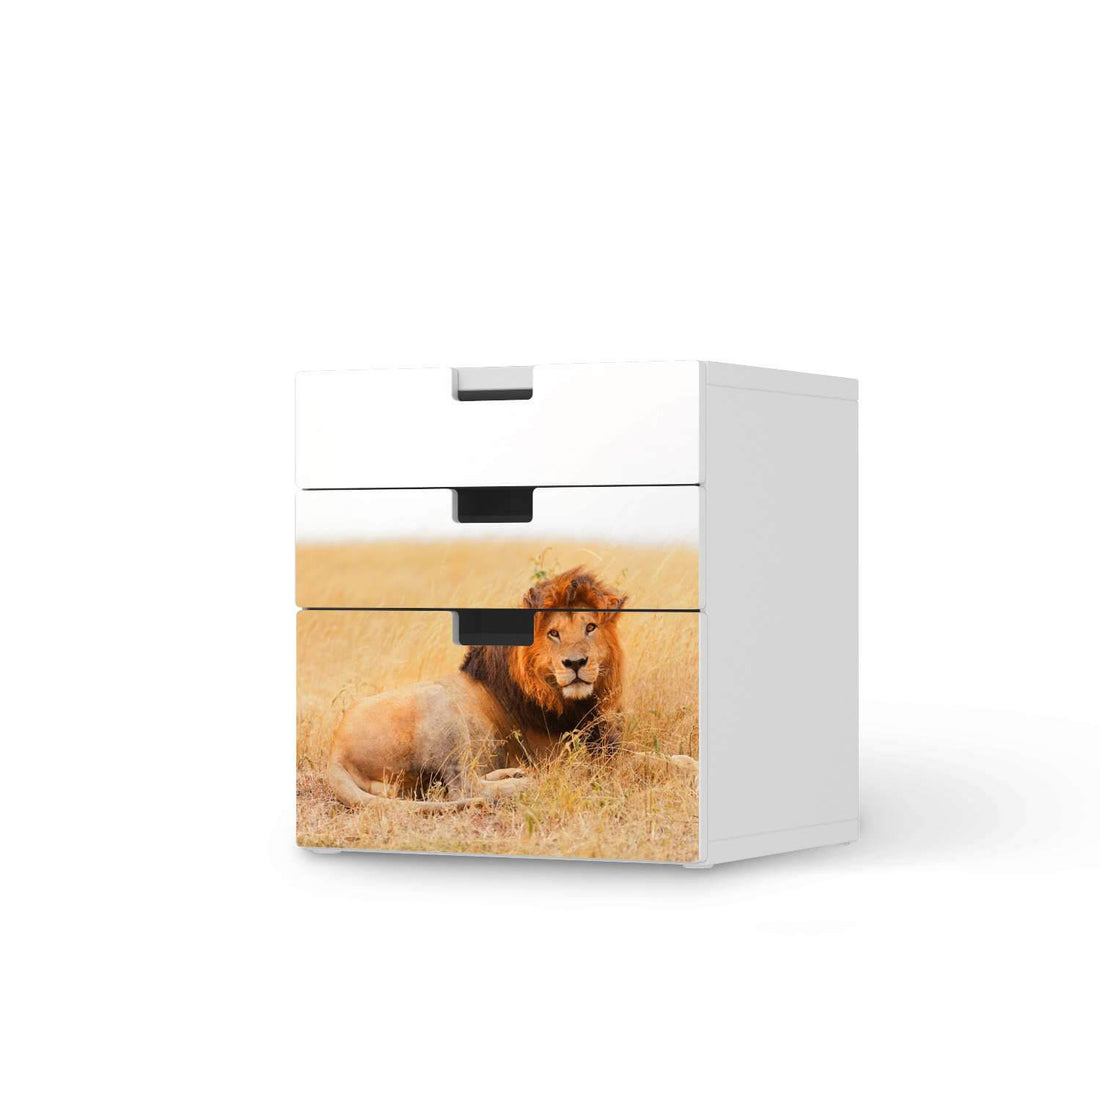 Folie für Möbel Lion King - IKEA Stuva Kommode - 3 Schubladen (Kombination 1)  - weiss